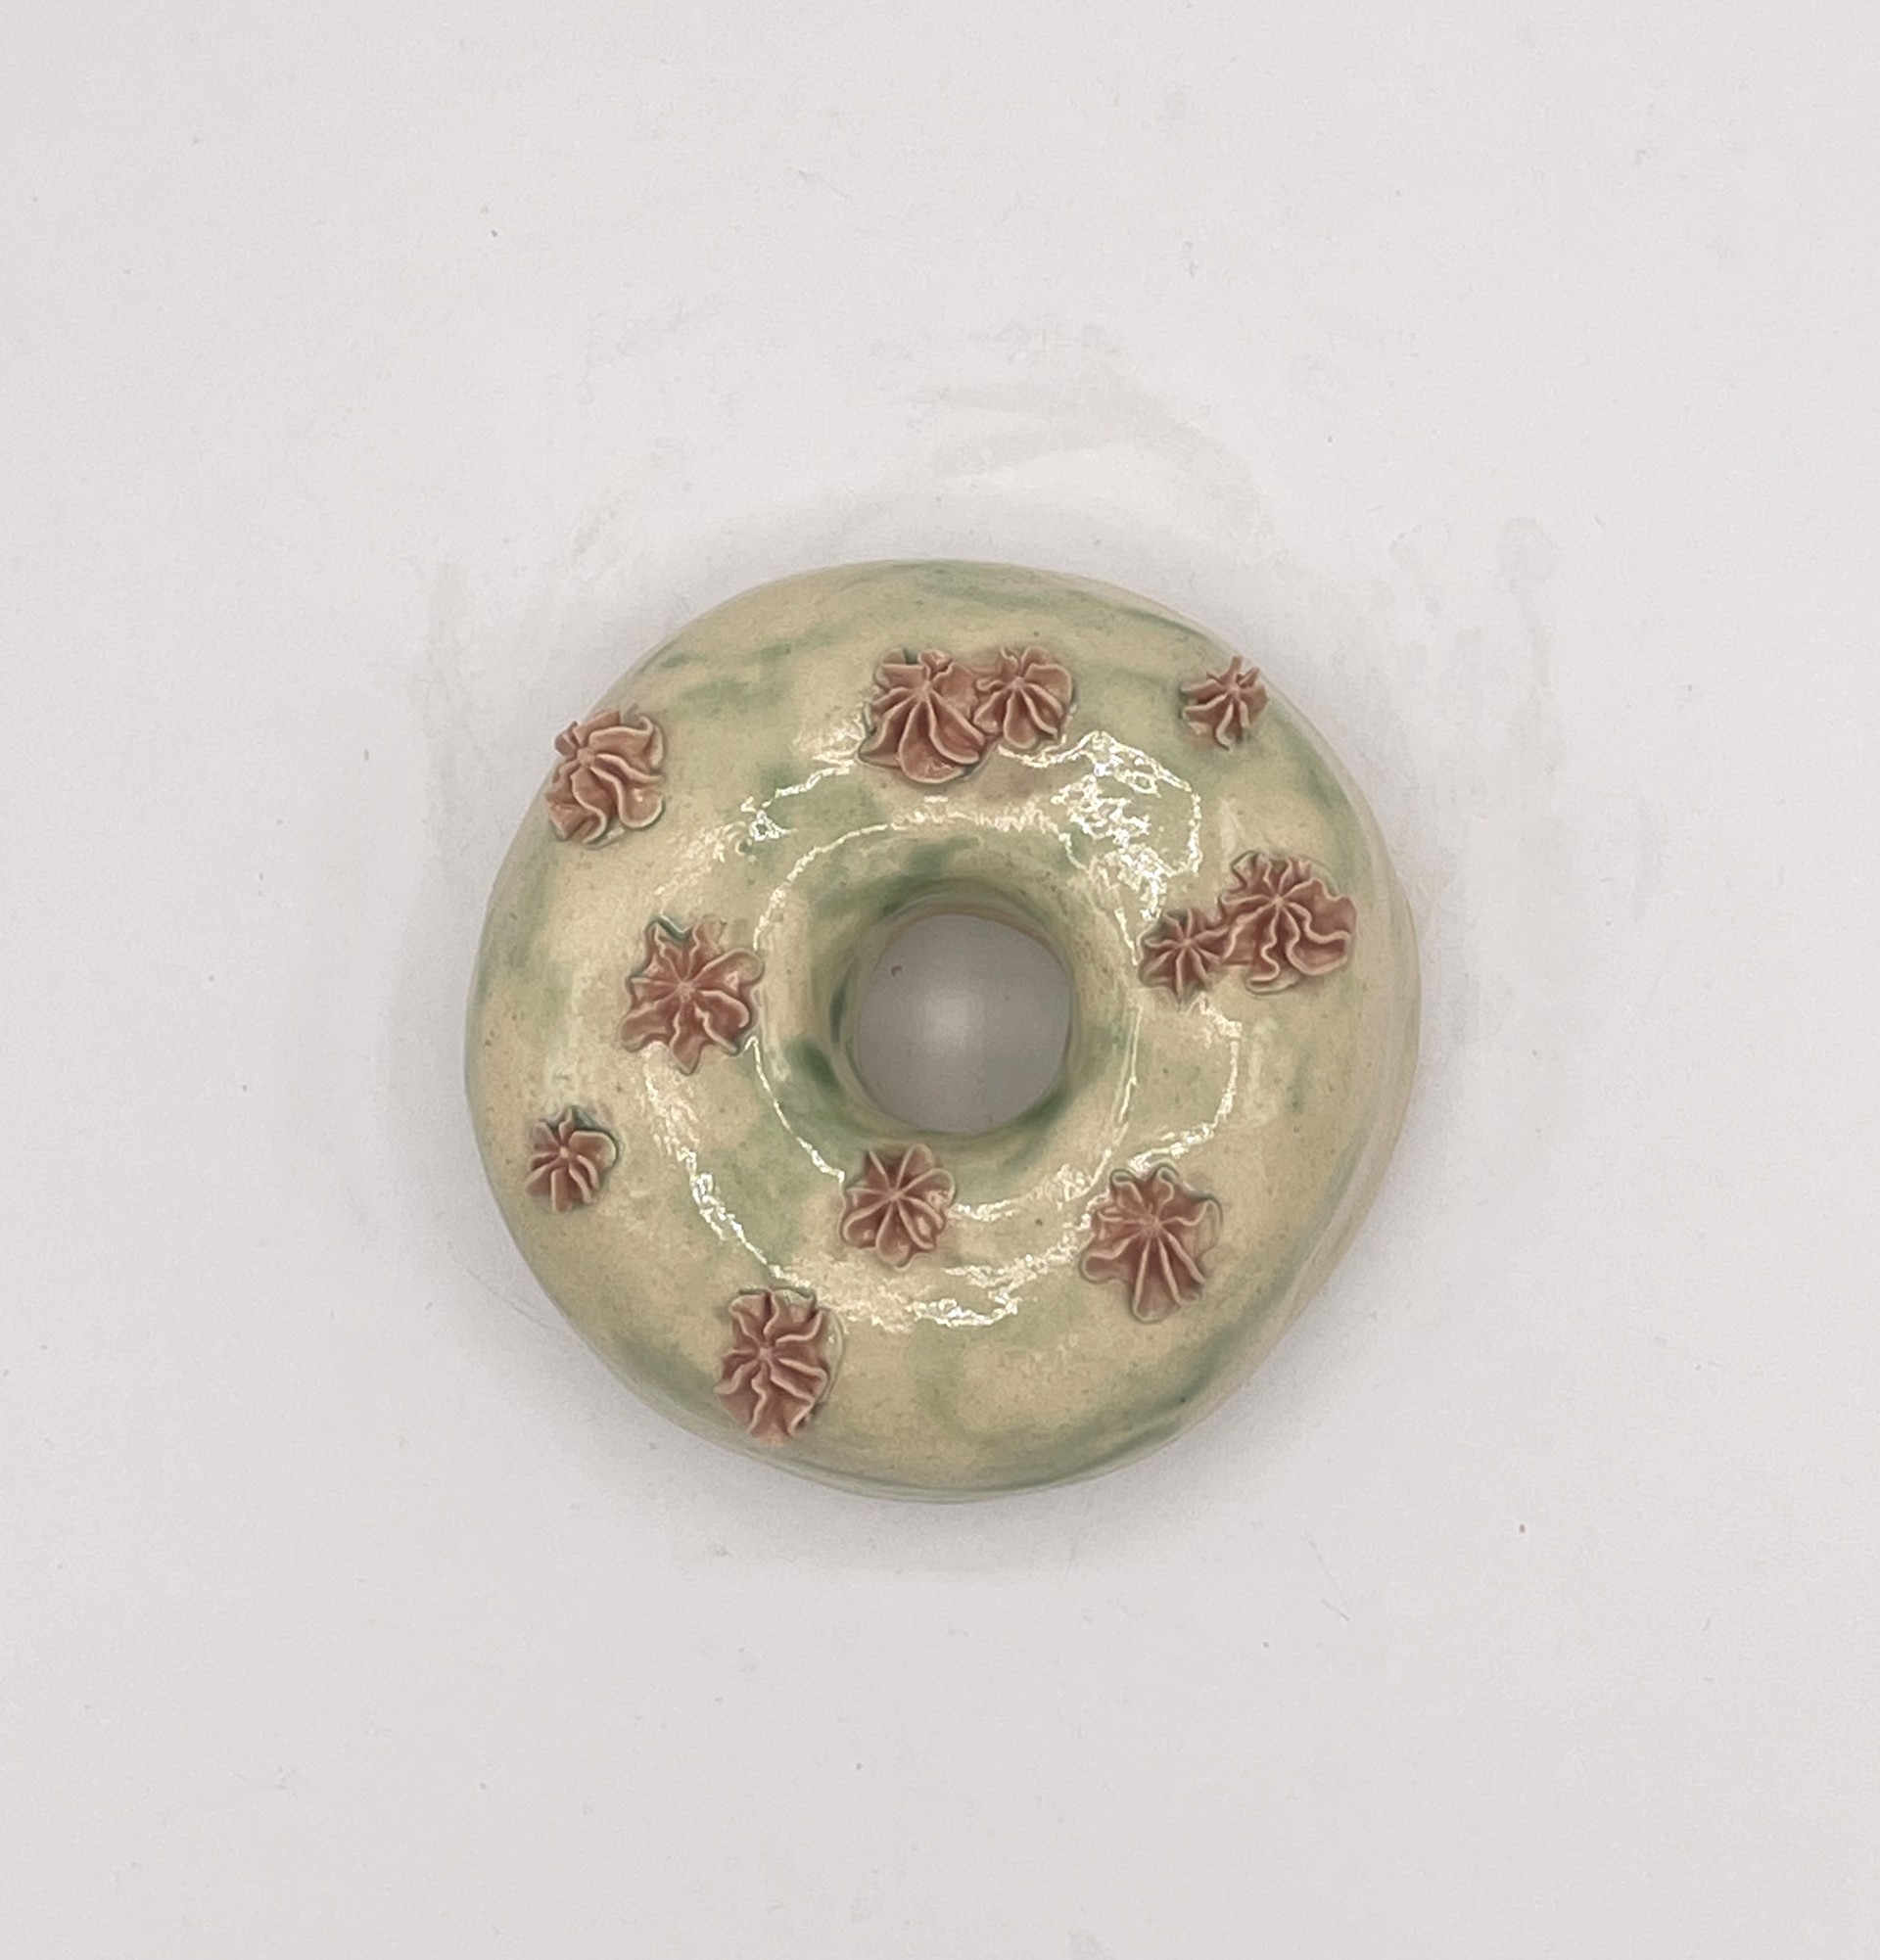 Donut by Liv Antonecchia